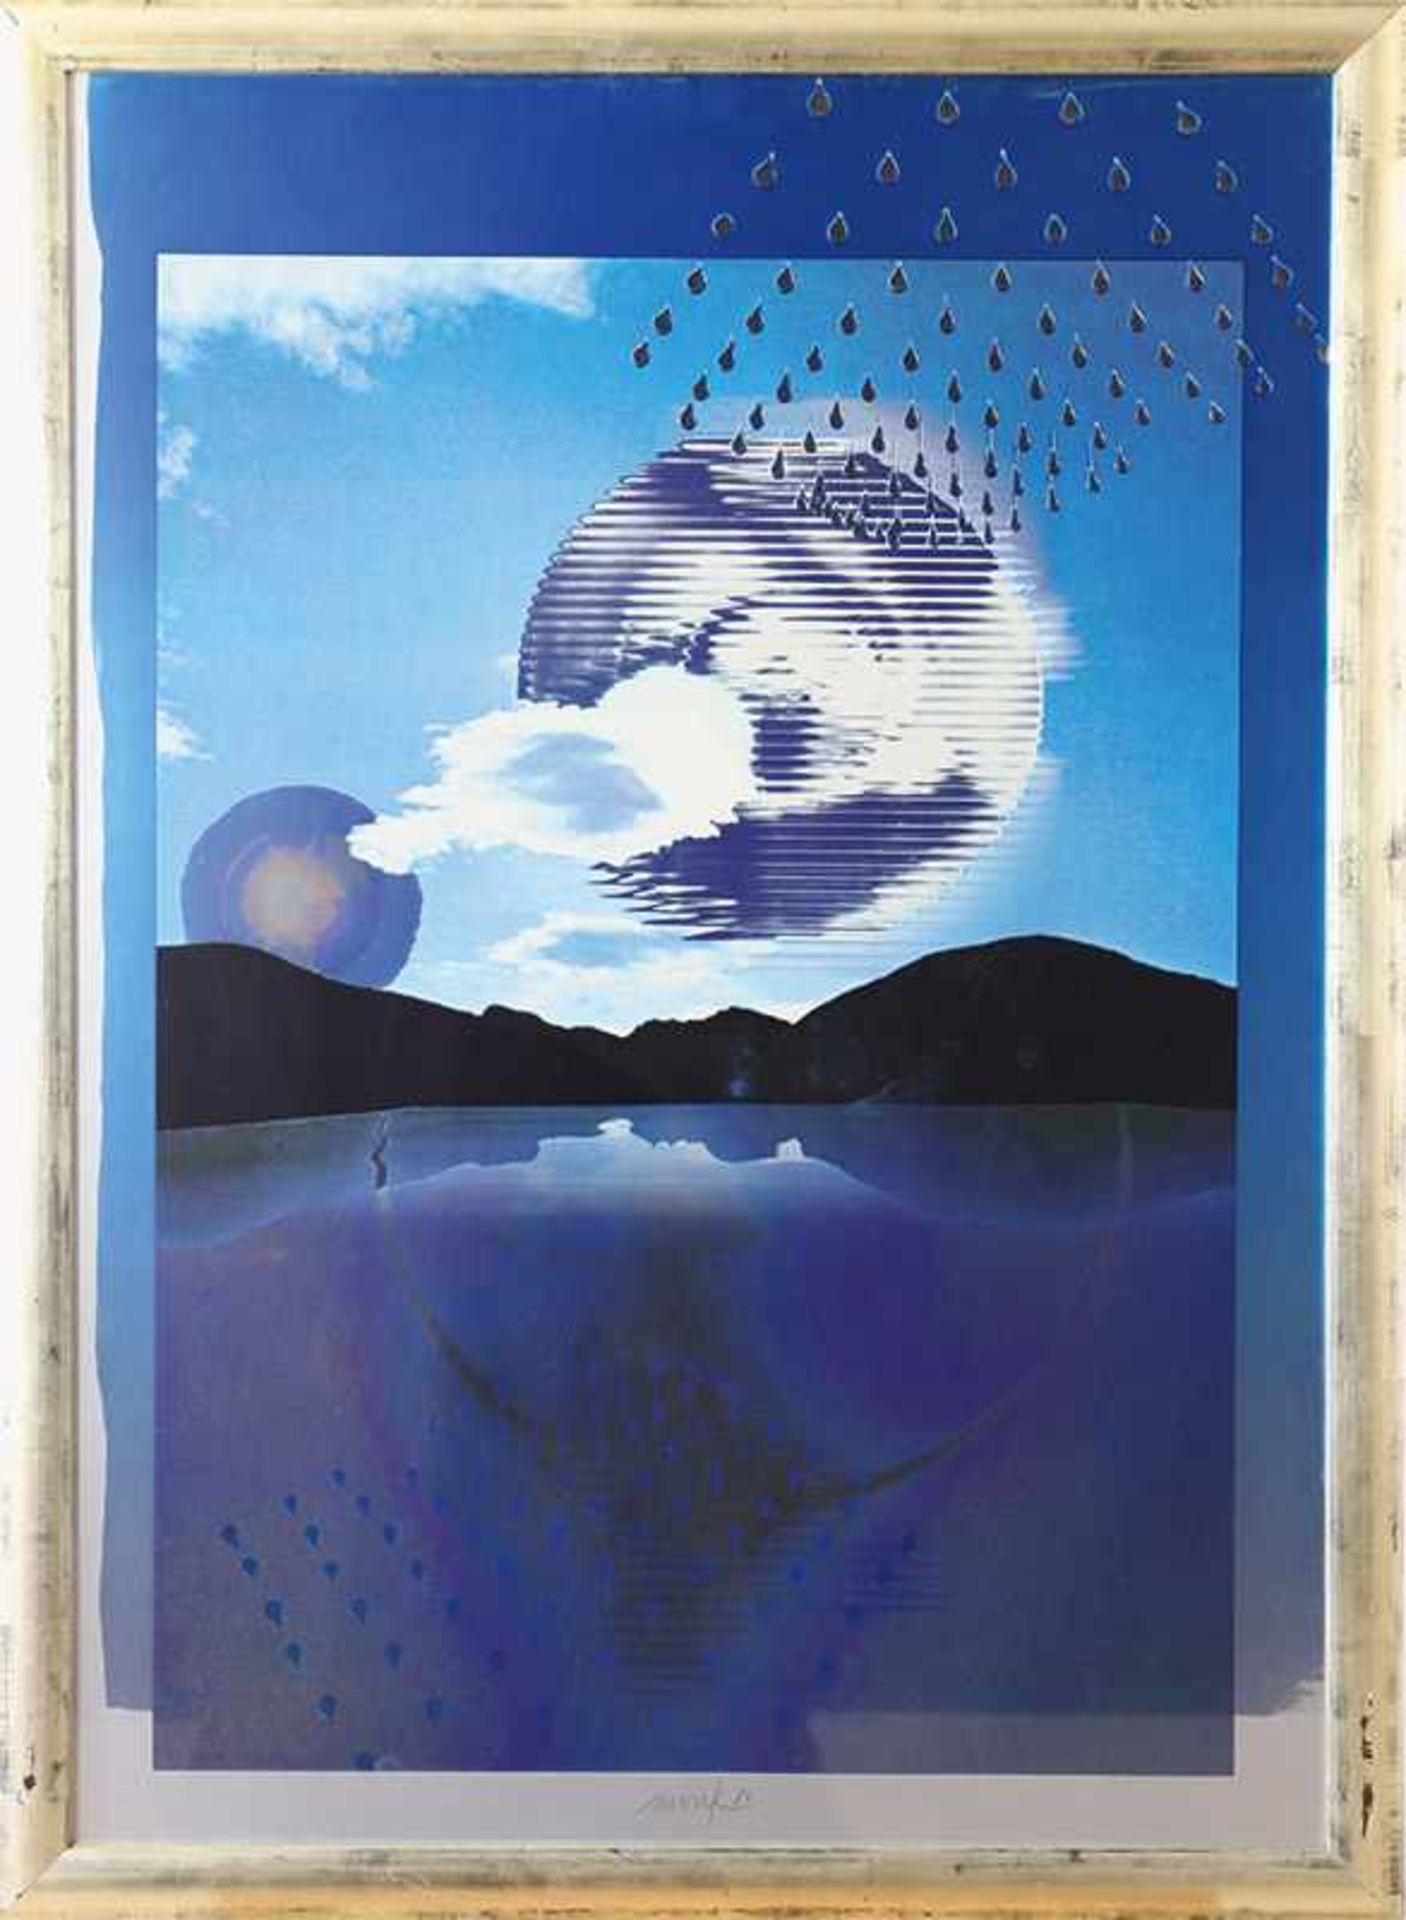 Kunst im Jahr 2000Heinz Mack* (*1931)1986Farbserigraphie und Silberprägung in Aluminium-Karton.